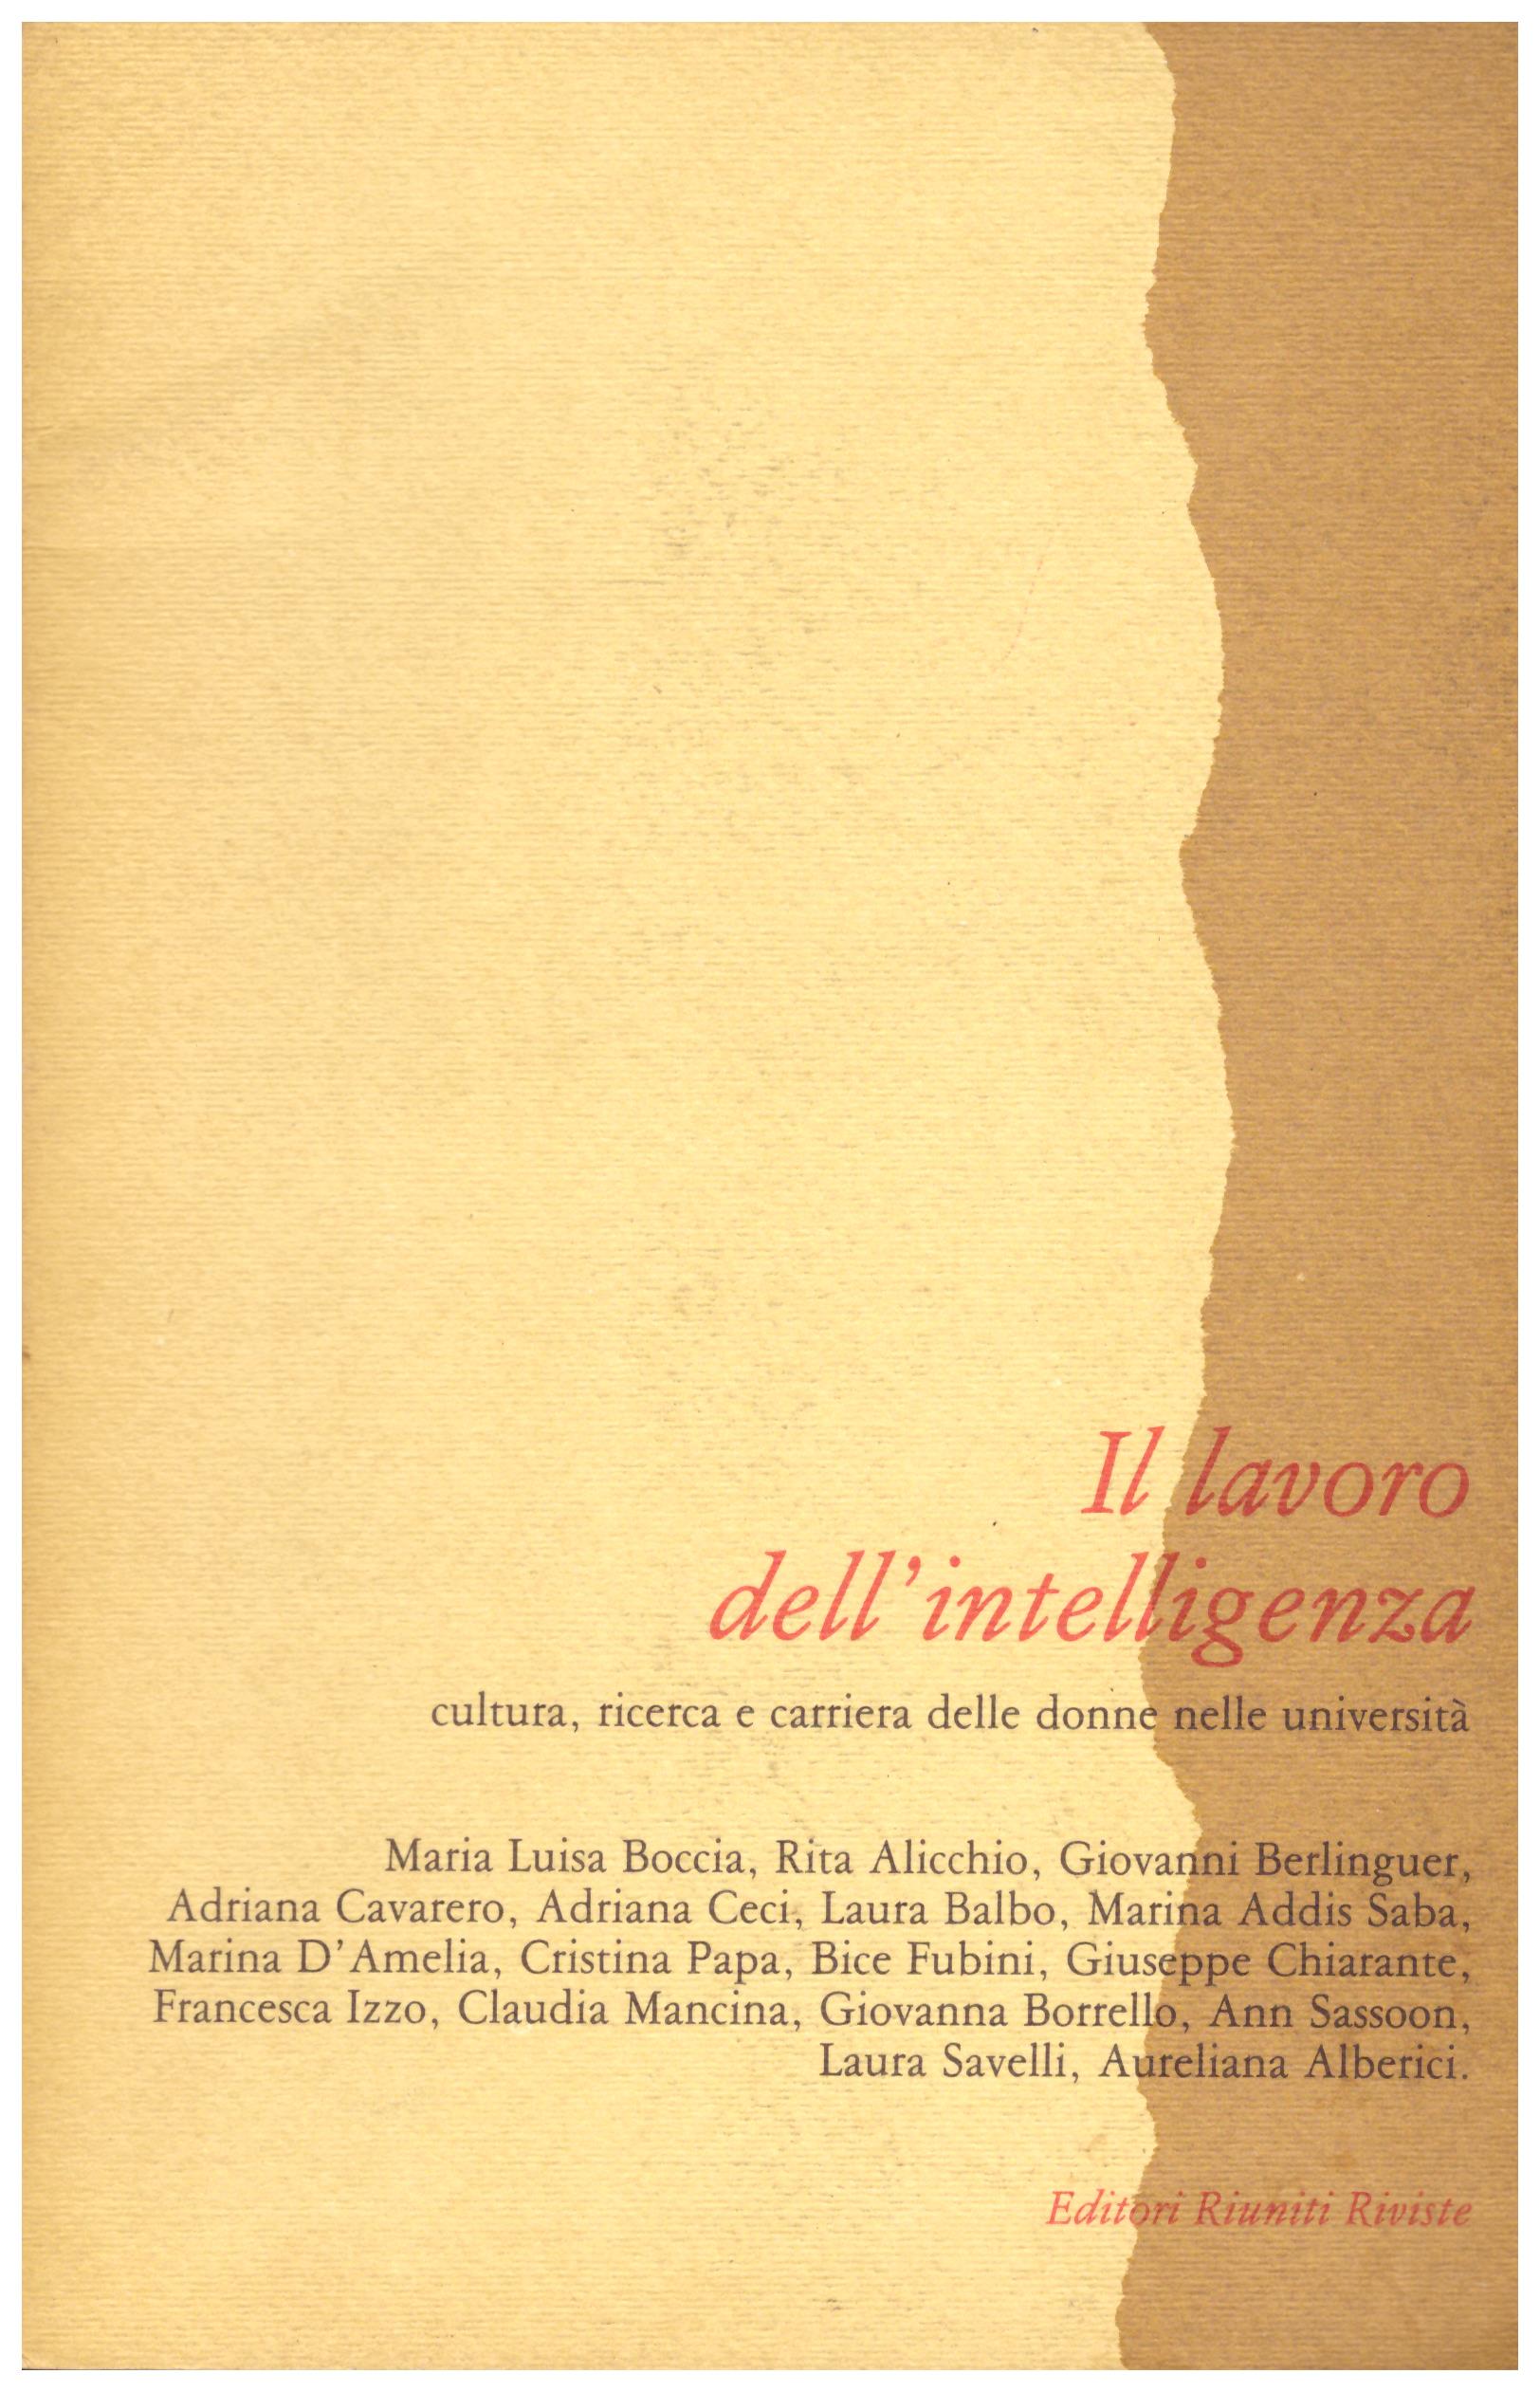 Titolo: Il lavoro dell'intelligenza     Autore: AA.VV.     Editore: Editori Riuniti Riviste 1986